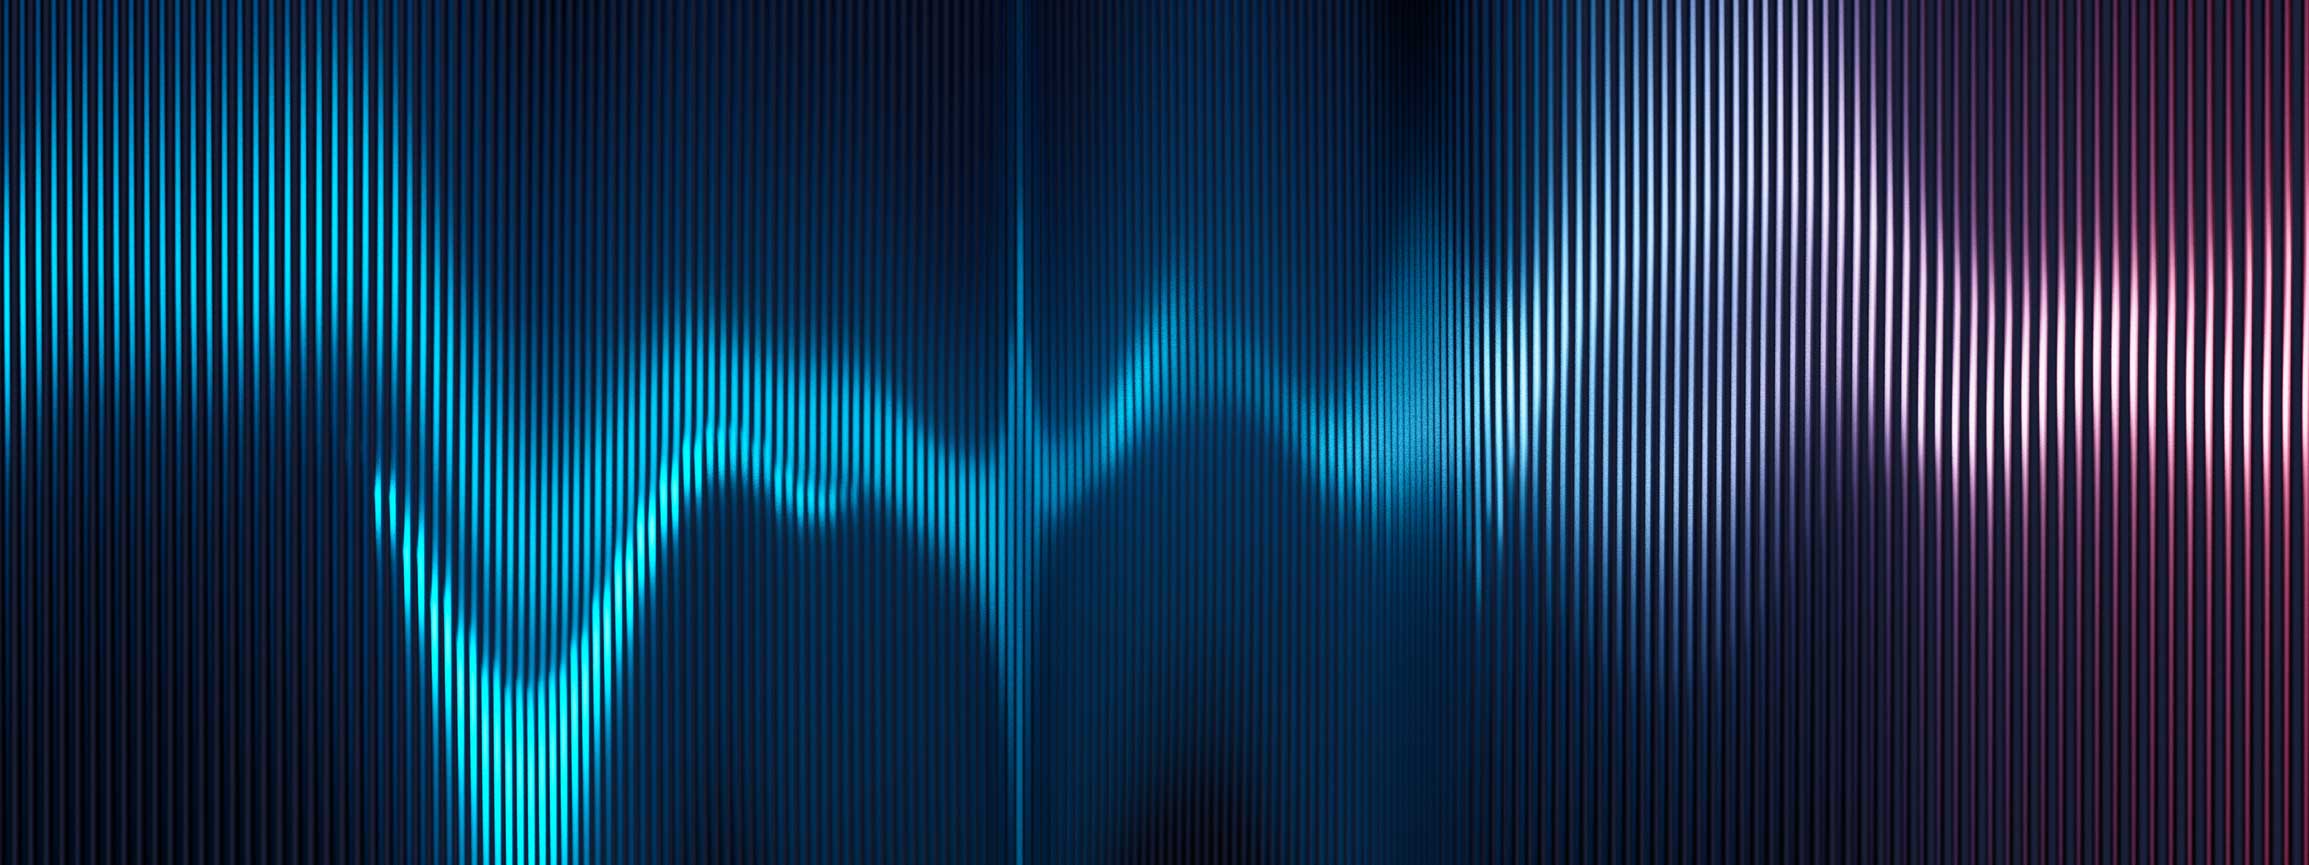 illustration of sound waves.